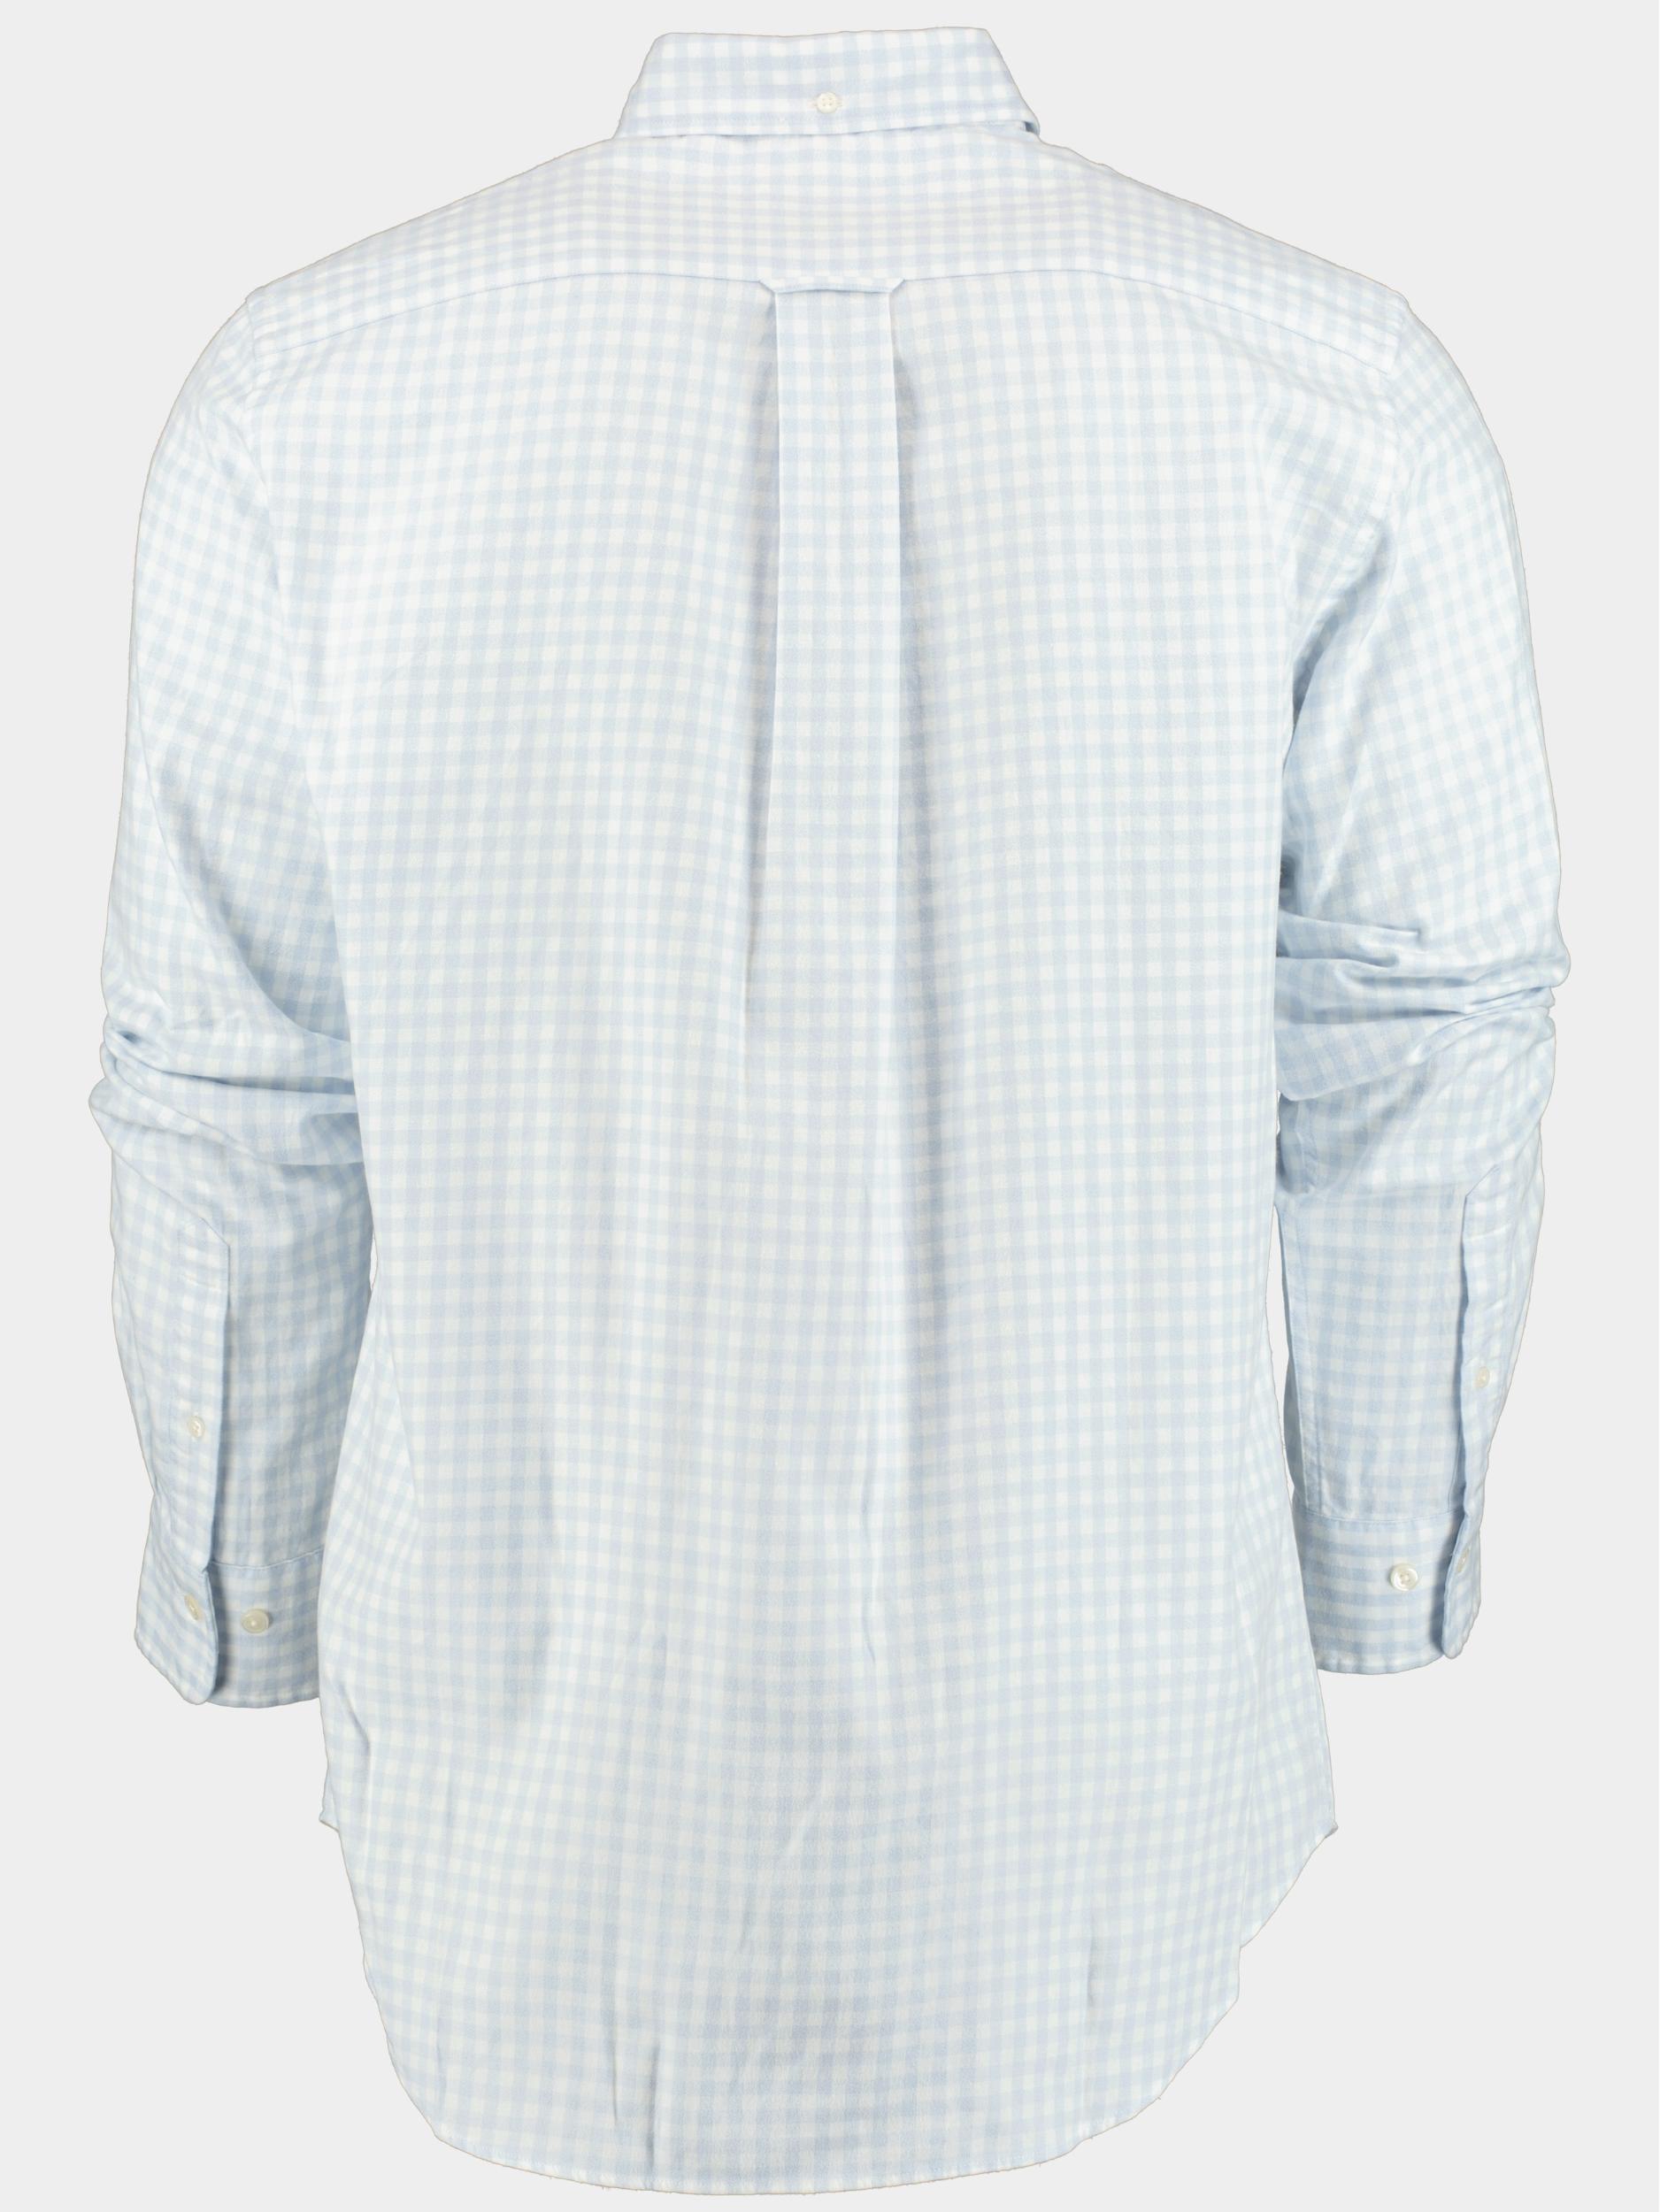 Gant Casual hemd lange mouw Blauw Reg Jaspe Gingham Shirt 3230219/420